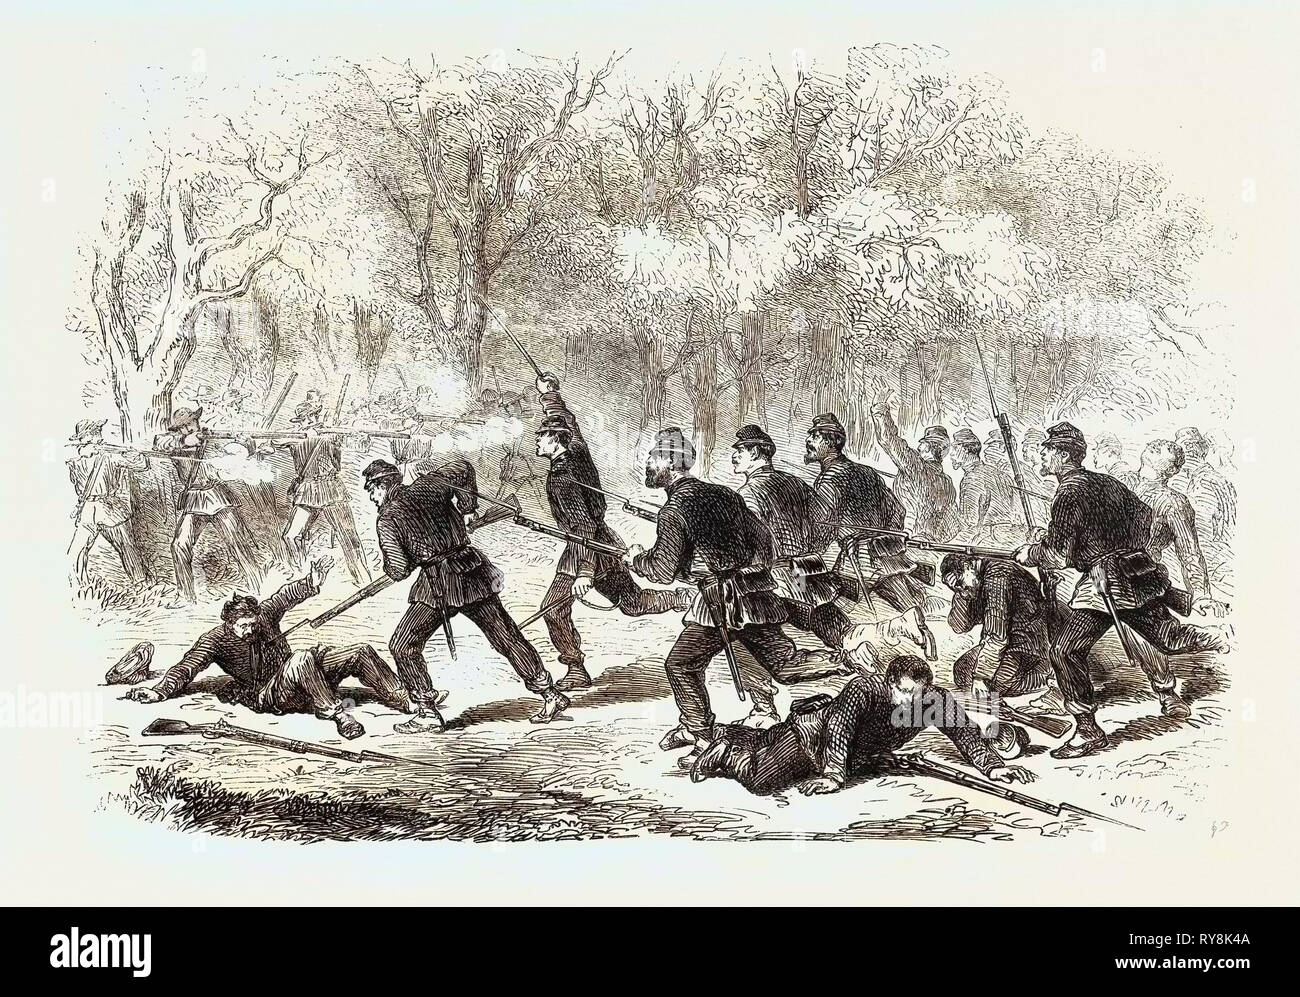 La guerra civil en Estados Unidos: La lucha de Ball's Bluff Potomac superior esfuerzo desesperado por el 15º Regimiento de Massachusetts para borrar el bosque por una carga de bayoneta el 23 de noviembre de 1861 Foto de stock